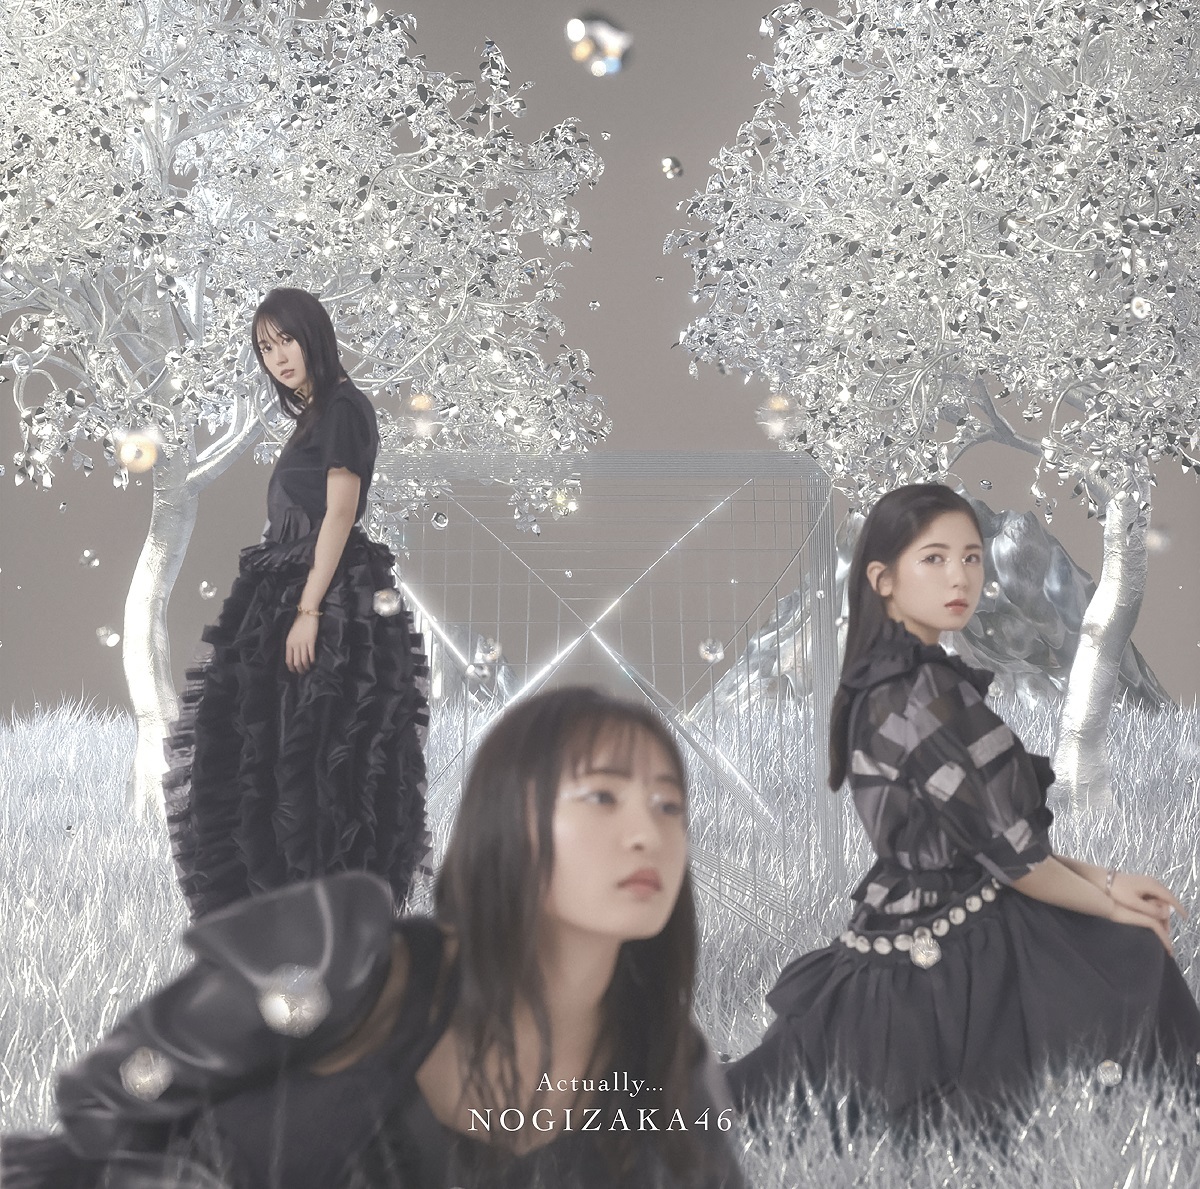 Nogizaka46 — Actually... cover artwork